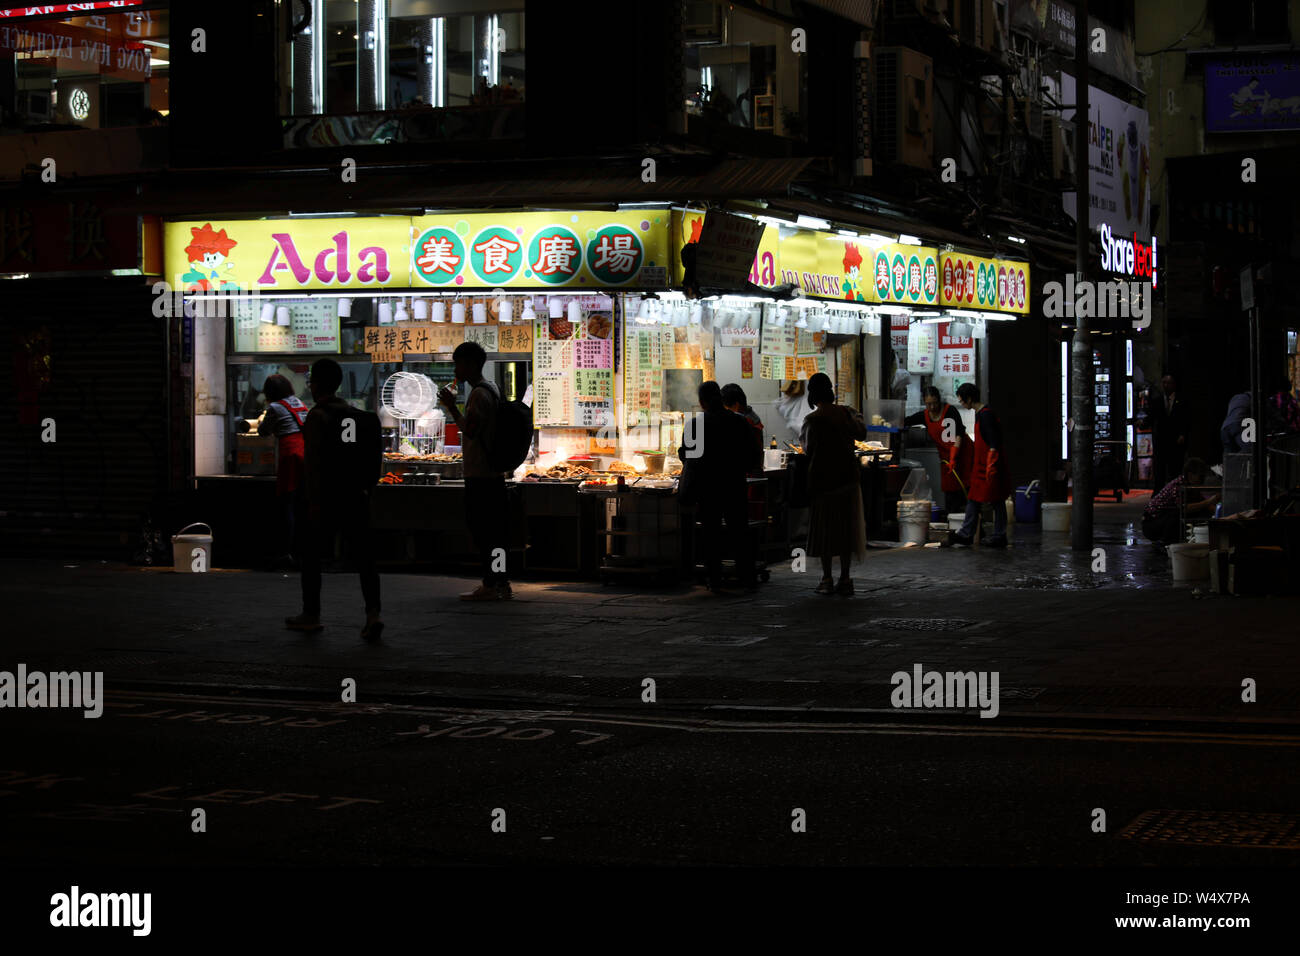 De vendeurs d'aliments de rue à l'angle de Lockhart Road et O'Brien Road à Hong Kong (Région administrative spéciale de la République populaire de Chine Banque D'Images